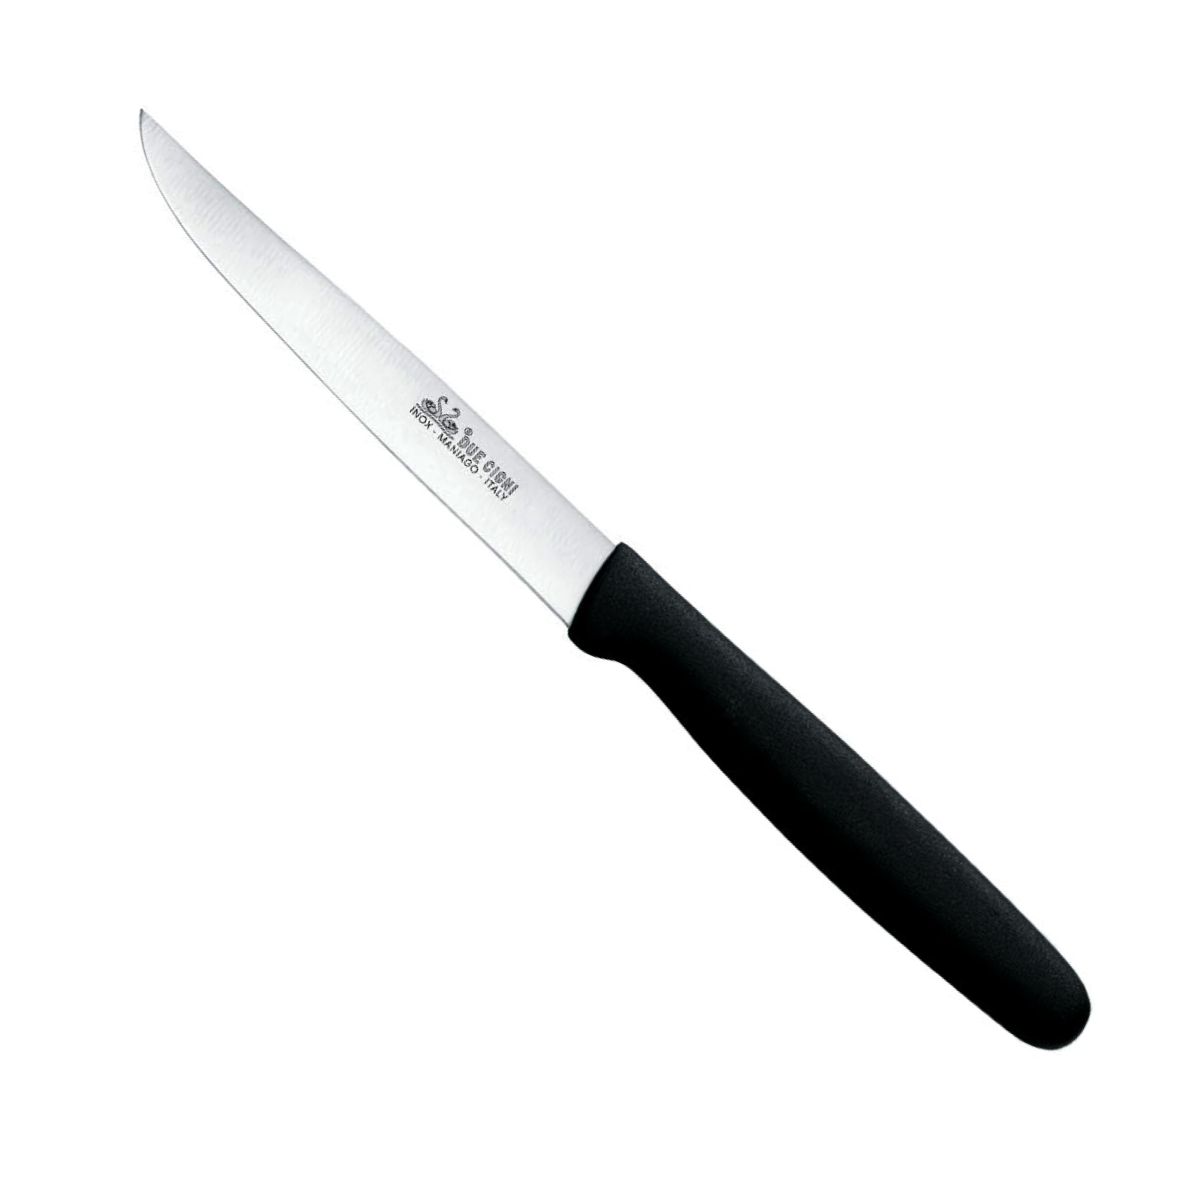 Basics 4 Inch Utility Knife Black Handle